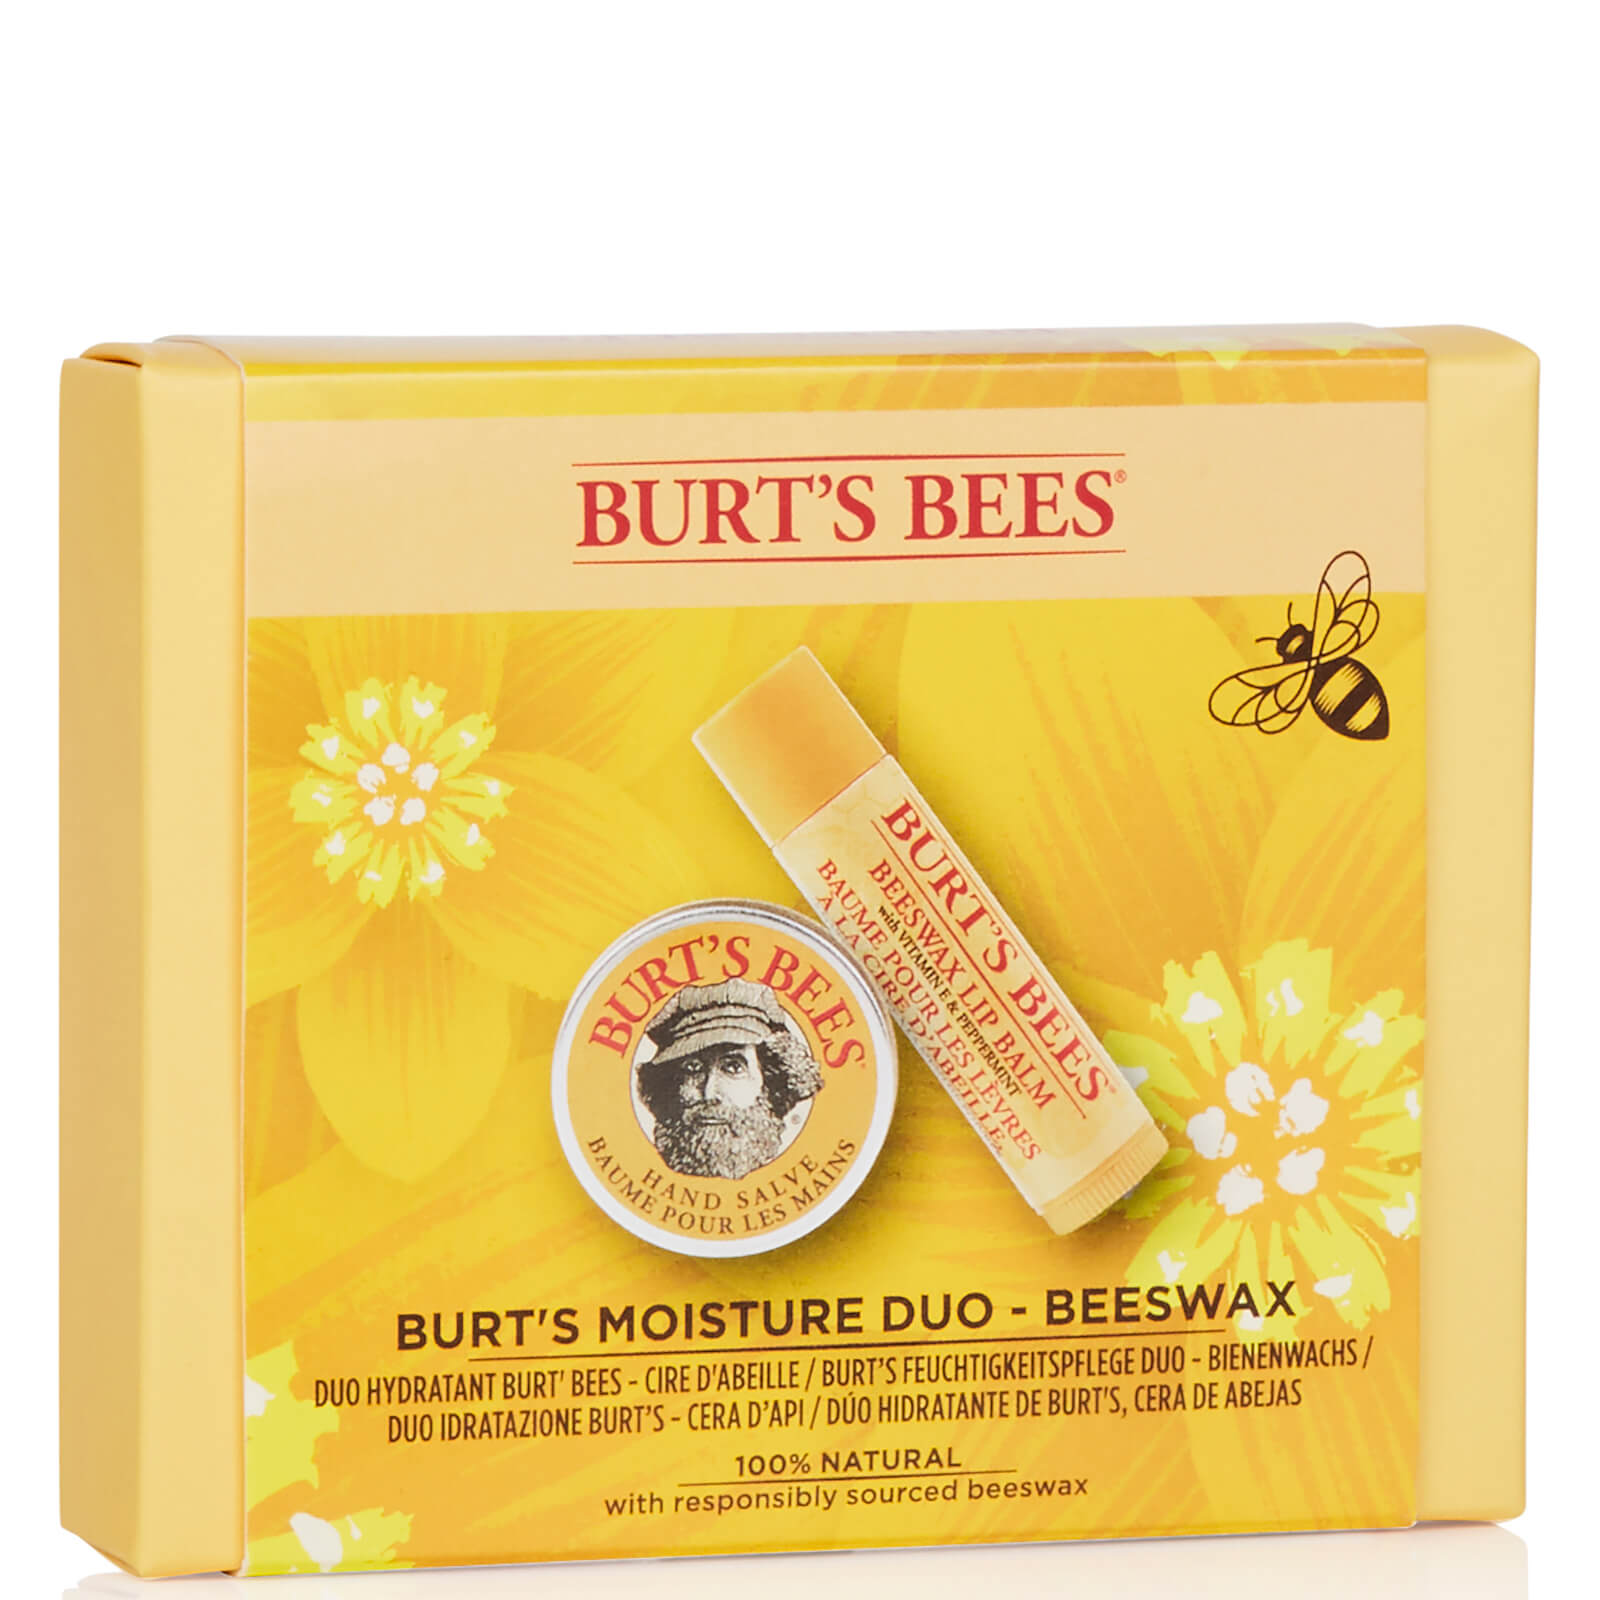 Burt's Bees Moisture Duo - Beeswax